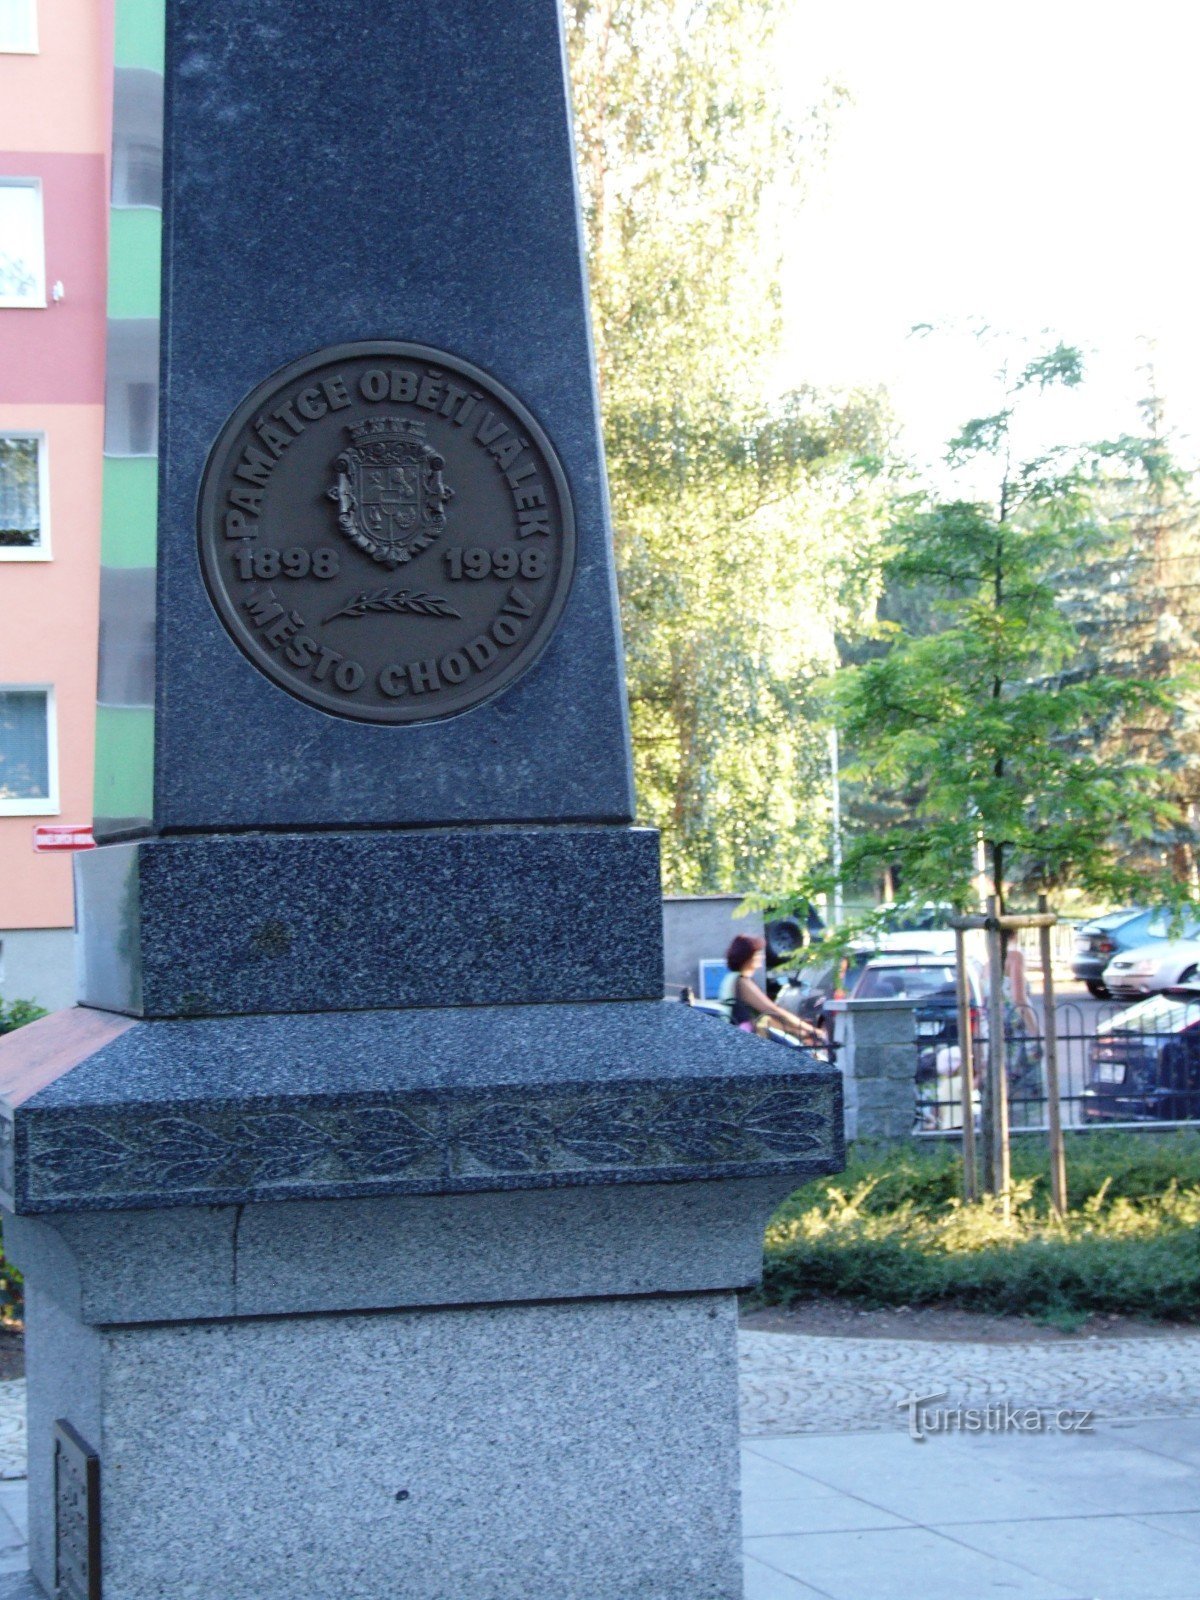 Monument pour honorer la mémoire des victimes des guerres